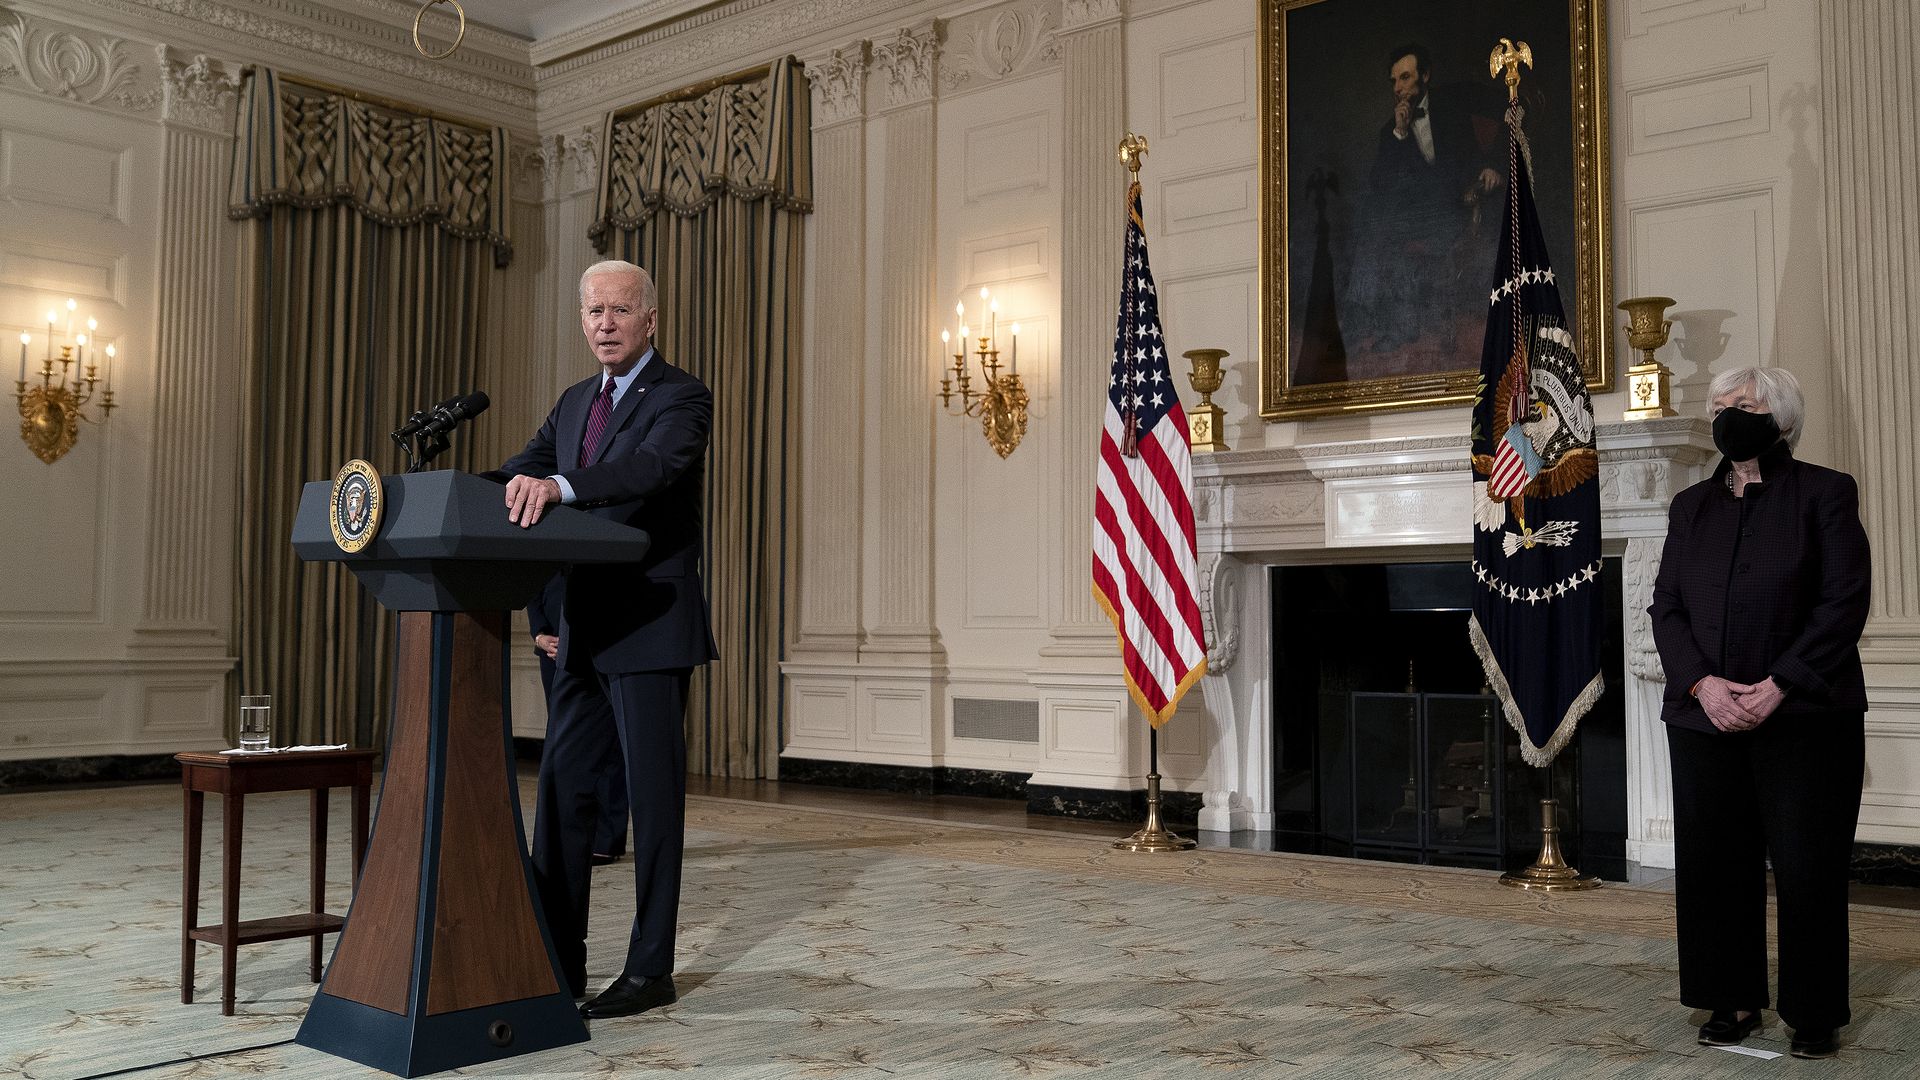 Biden at the podium speaking with Janet Yellen behind him 